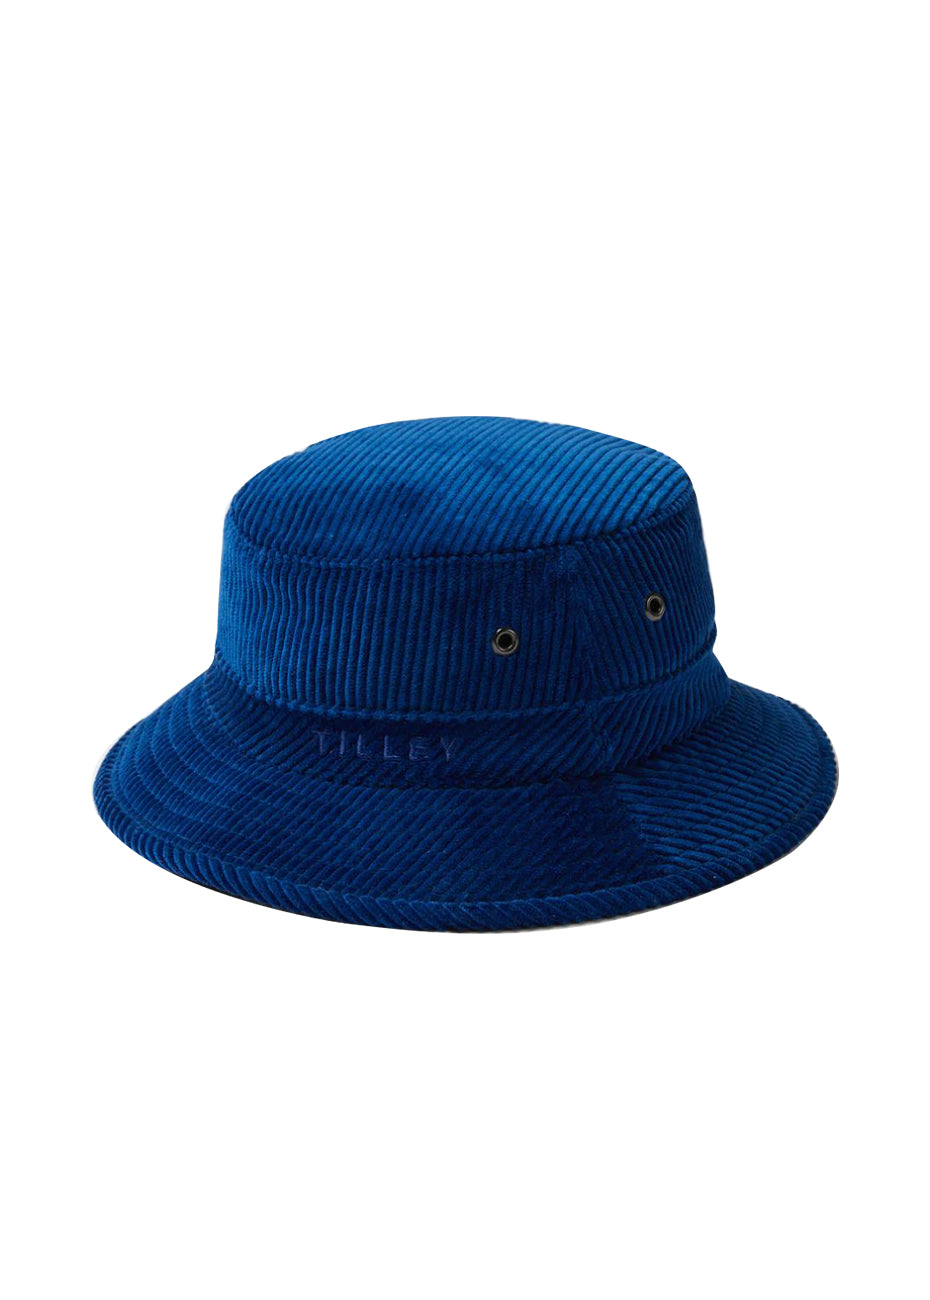 Tilley Italian Corduroy T1 Bucket Hat - Cobalt Pink Tartan